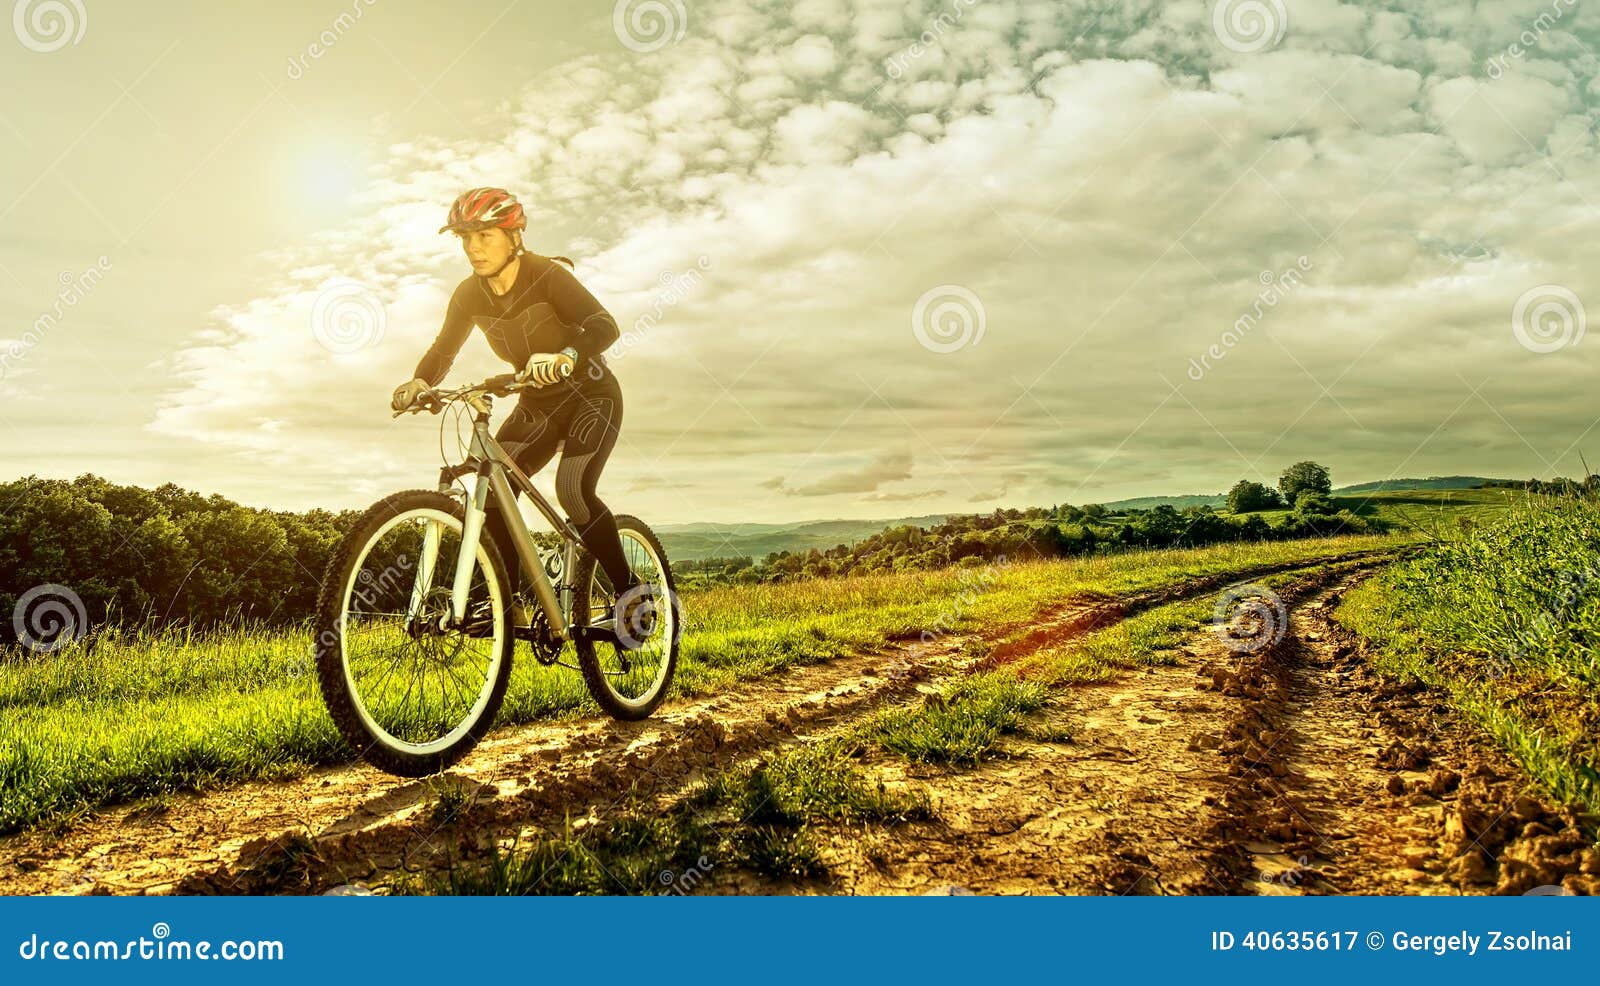 Technologie Snor bossen De Vrouw Van De Sportfiets Op Een Weide Met Een Mooi Landschap Stock  Afbeelding - Image of helm, blauw: 40635617